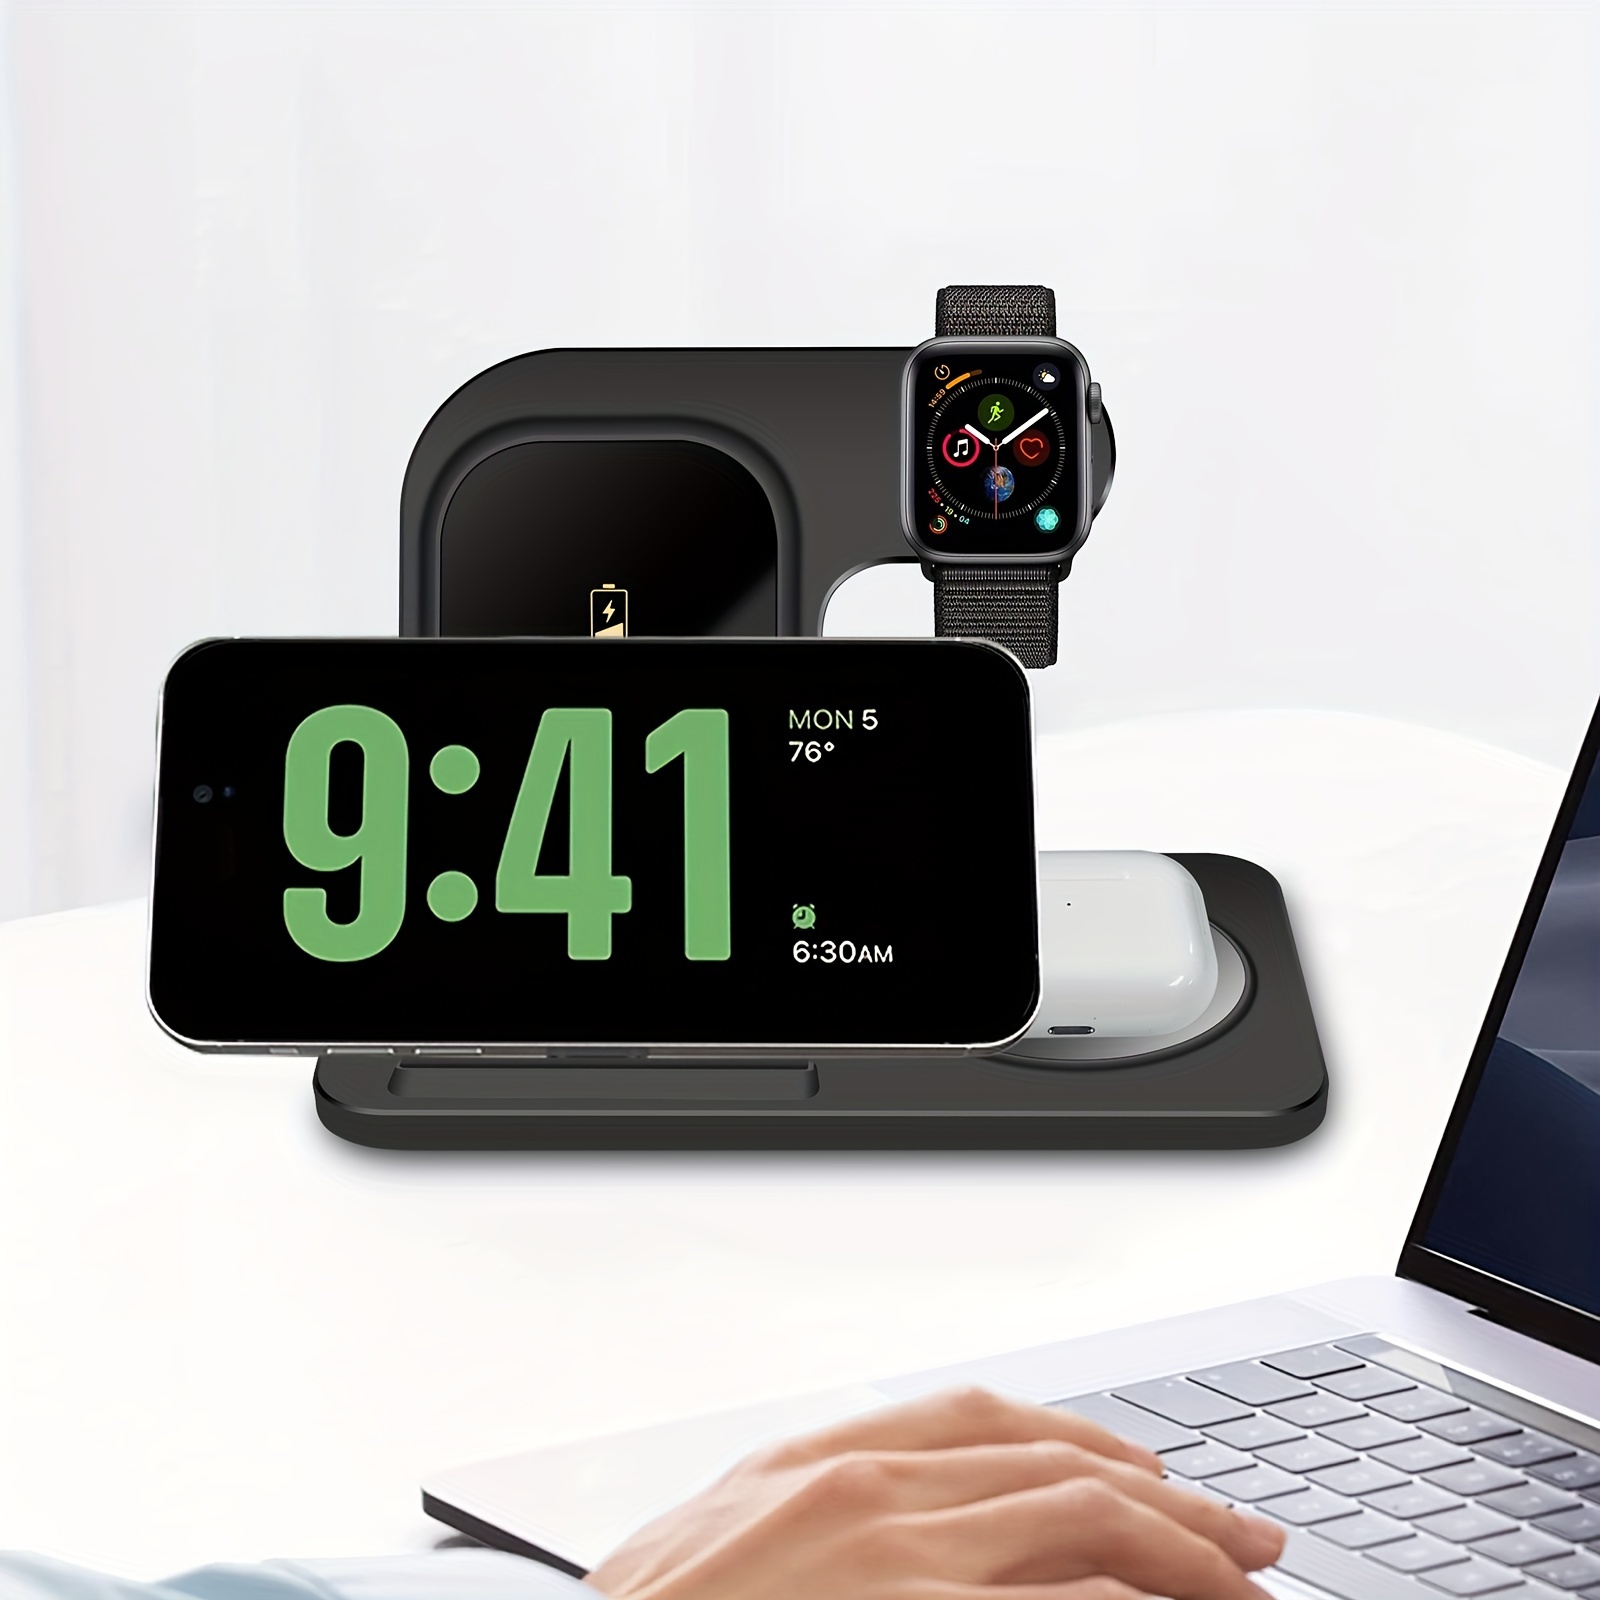 Cargador rápido inalámbrico para Apple Watch y batería externa